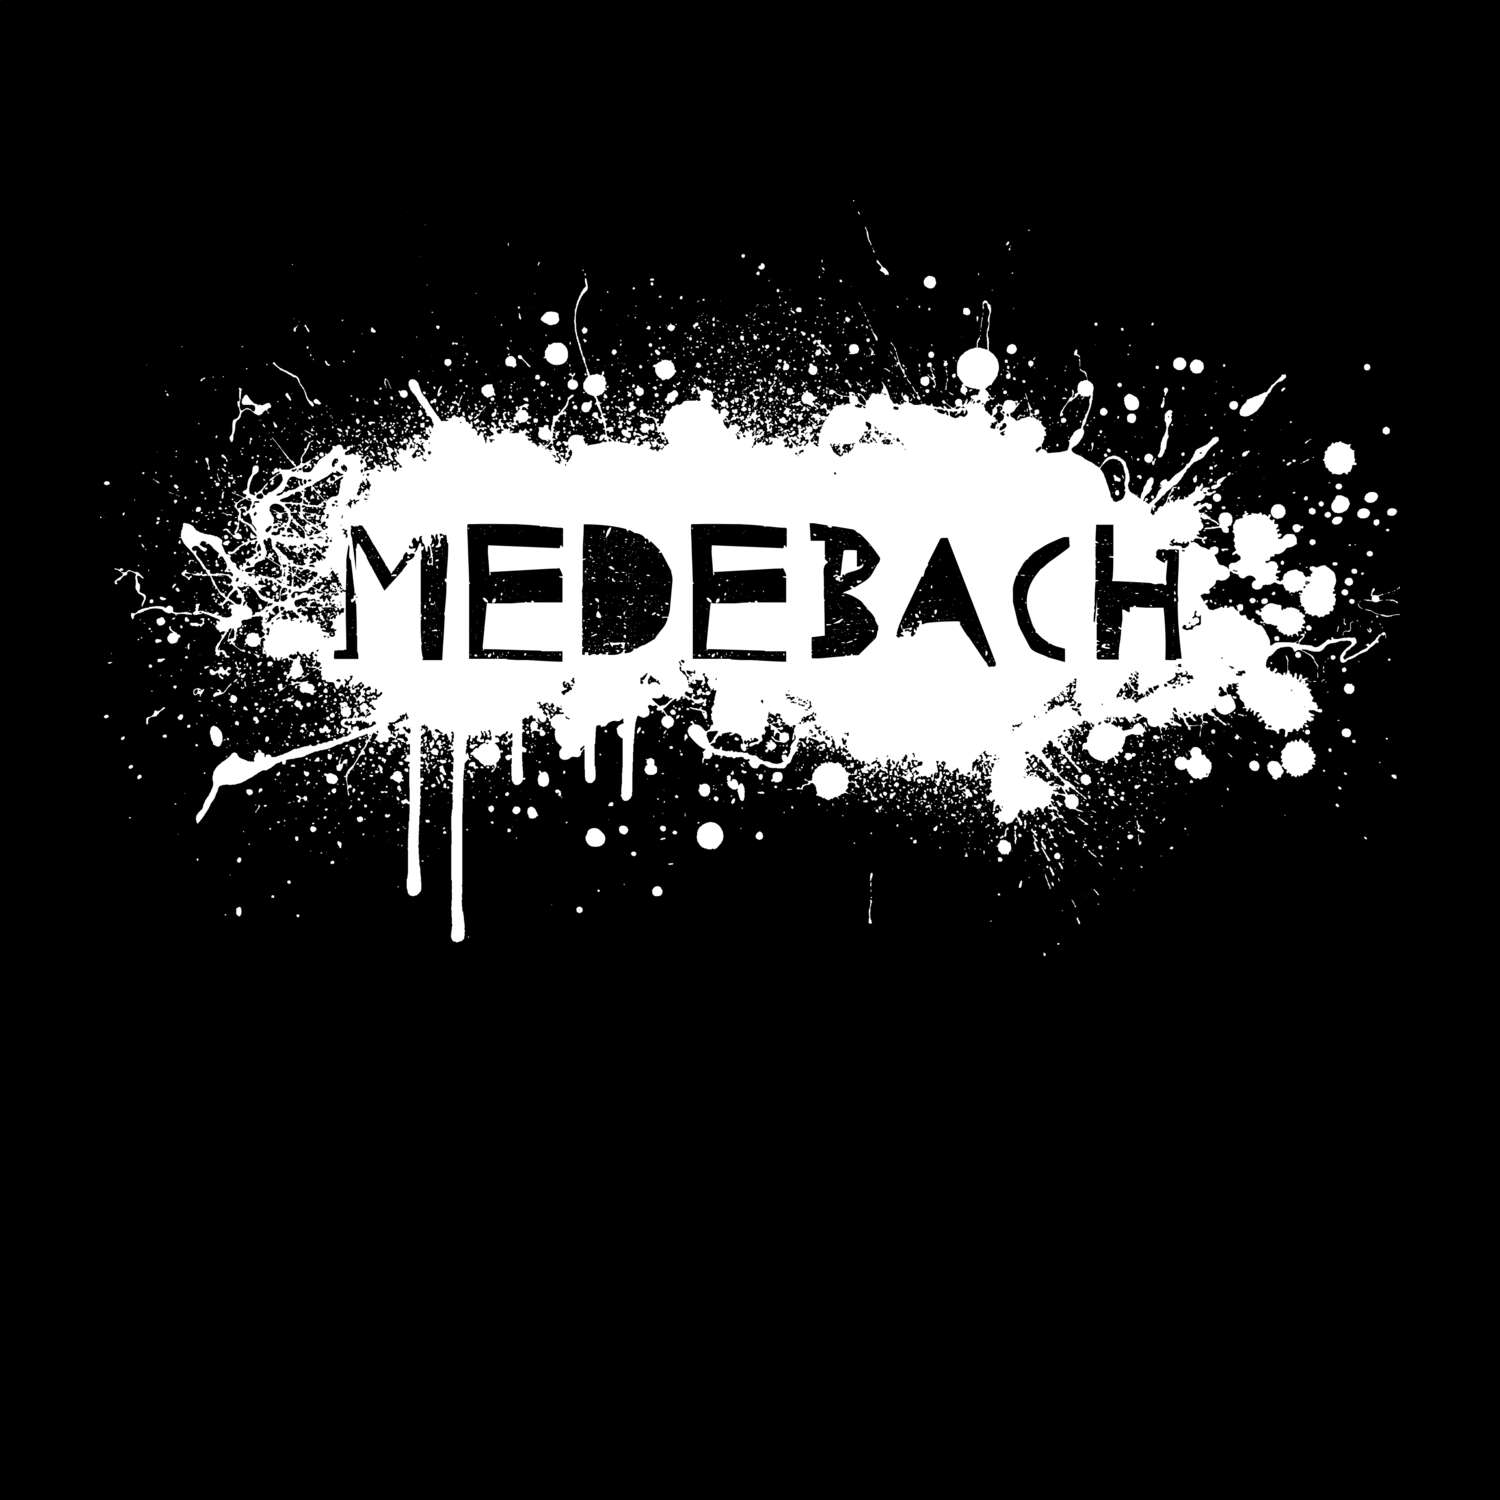 Medebach T-Shirt »Paint Splash Punk«